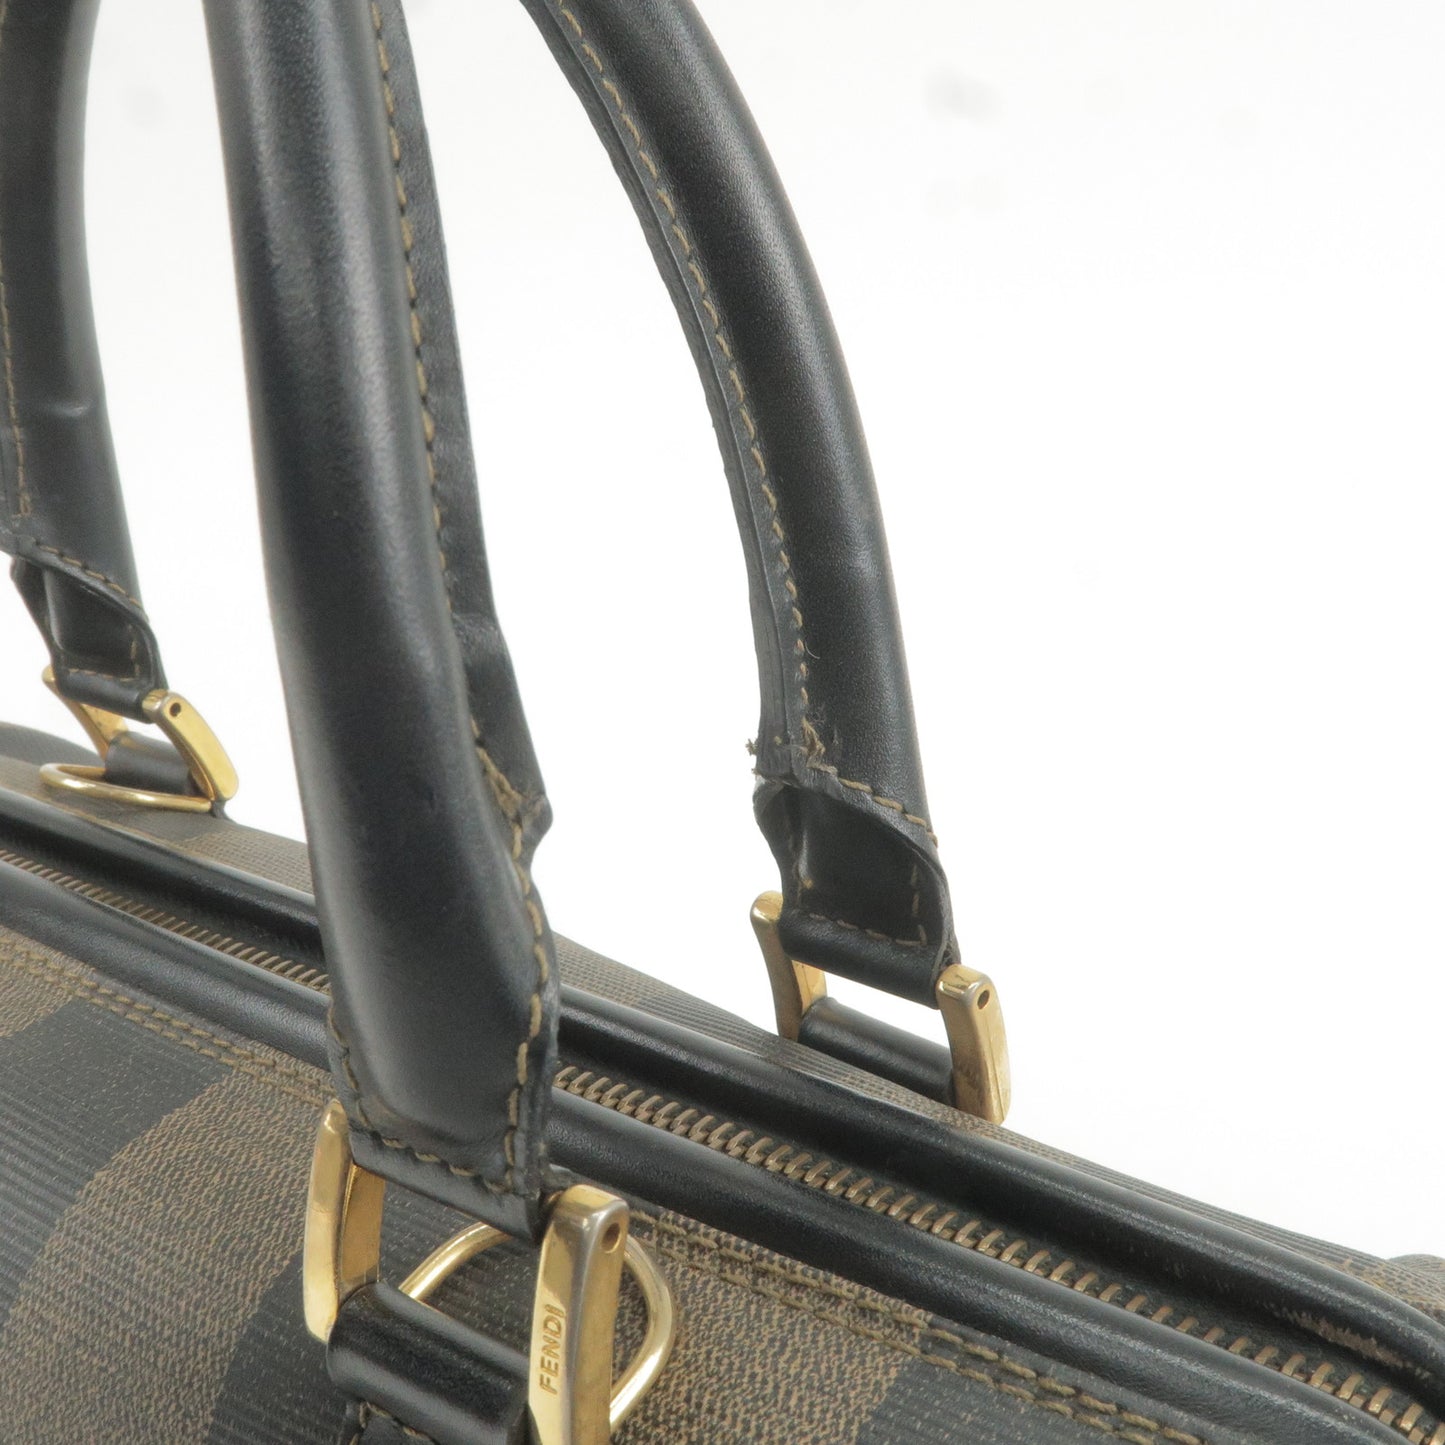 FENDI Pequin PVC Leather Boston Bag Hand Bag Khaki Black 259022